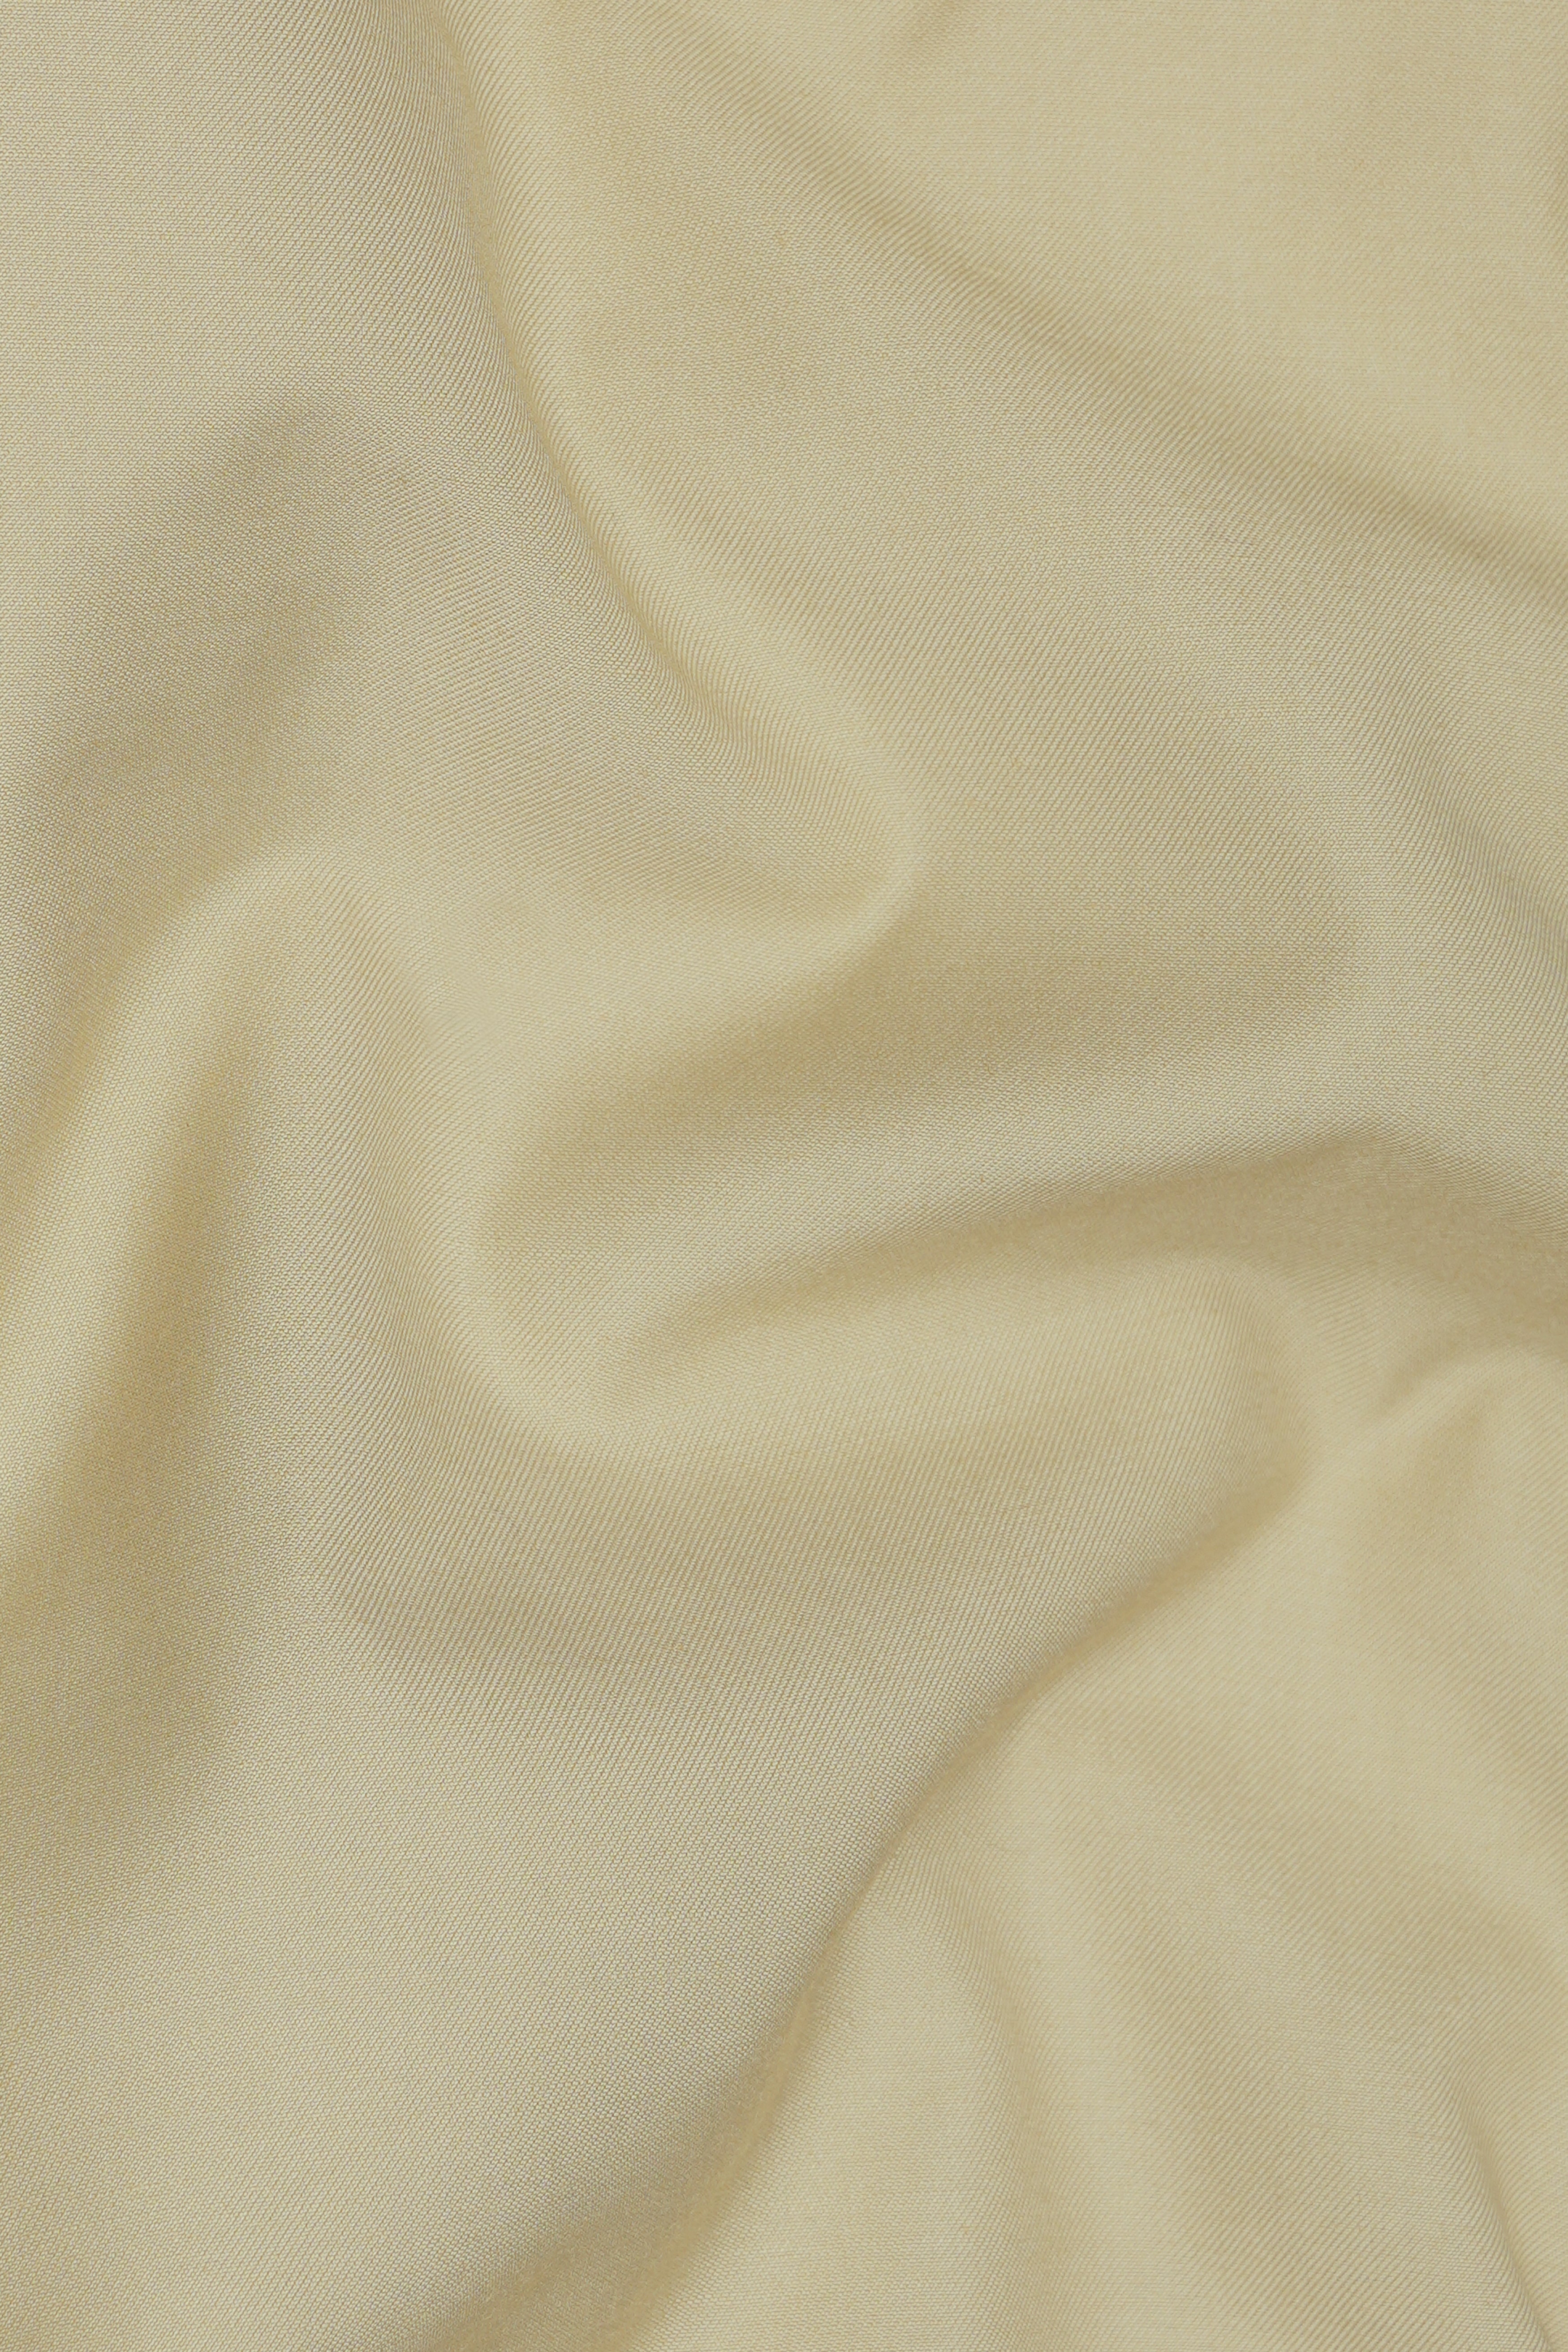 Yuma Cream Wool Rich Waistcoat V2925-36, V2925-38, V2925-40, V2925-42, V2925-44, V2925-46, V2925-48, V2925-50, V2925-25, V2925-54, V2925-56, V2925-58, V2925-60